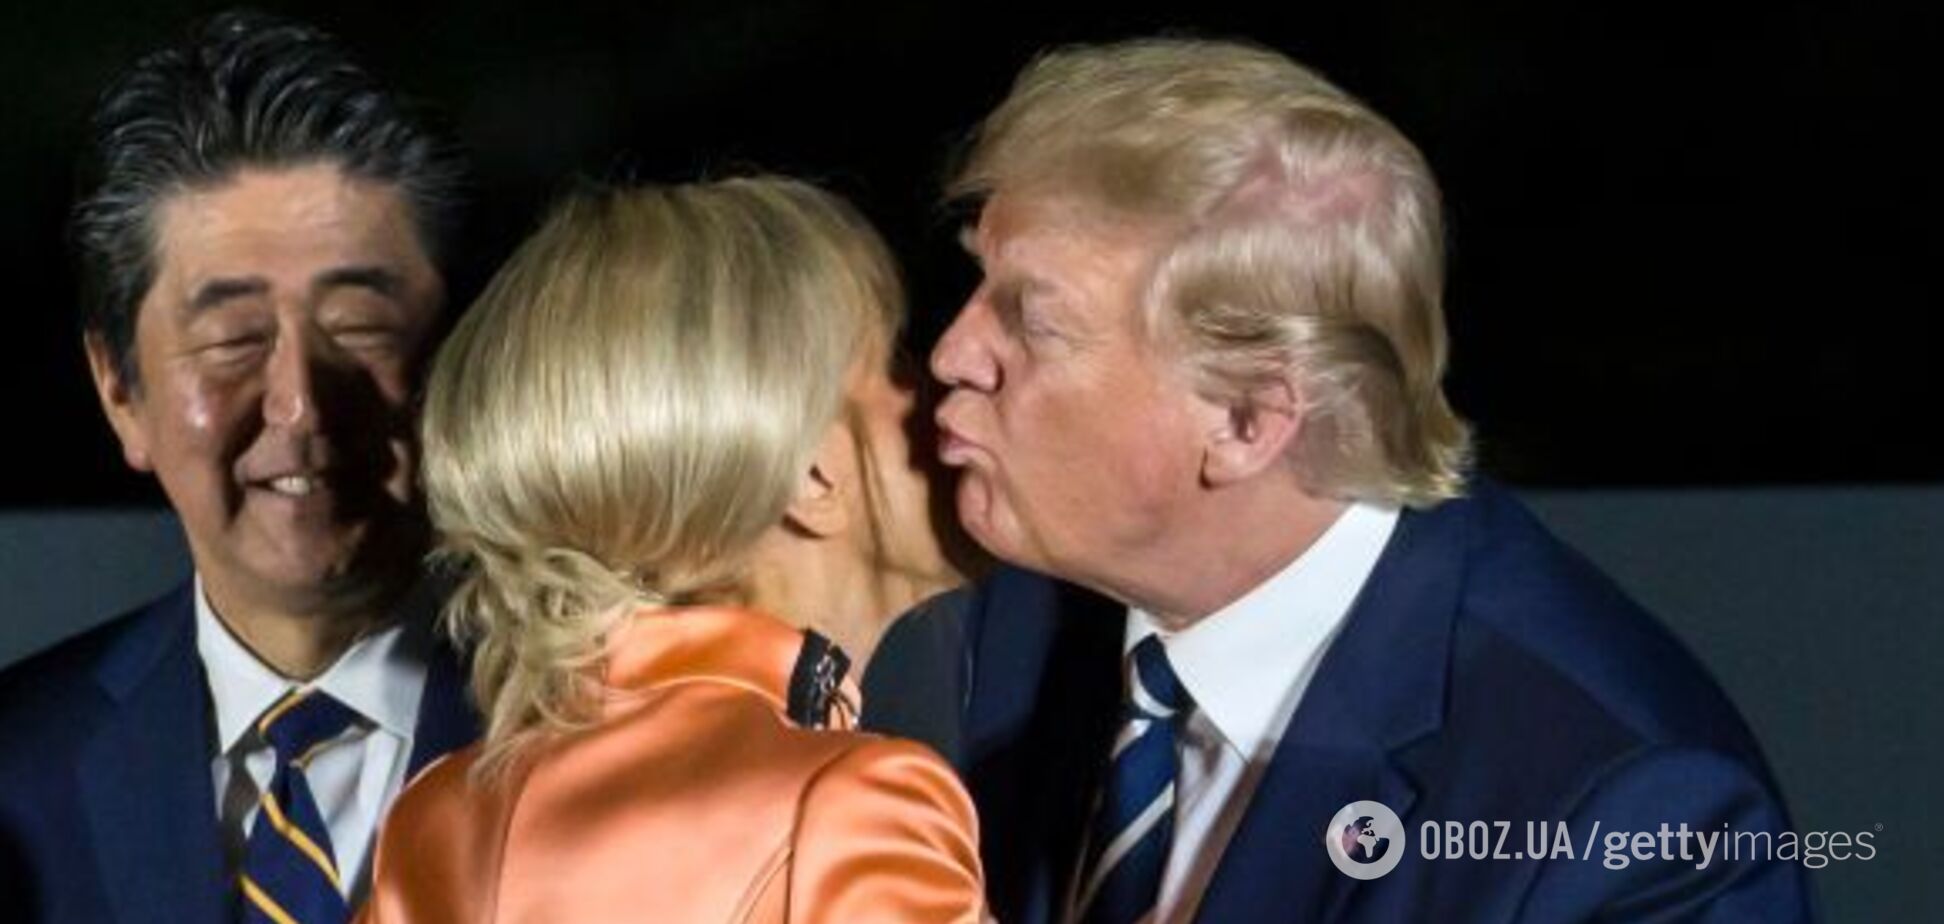 На саміті G20 Трамп цілувався з чужою дружиною: момент потрапив на відео